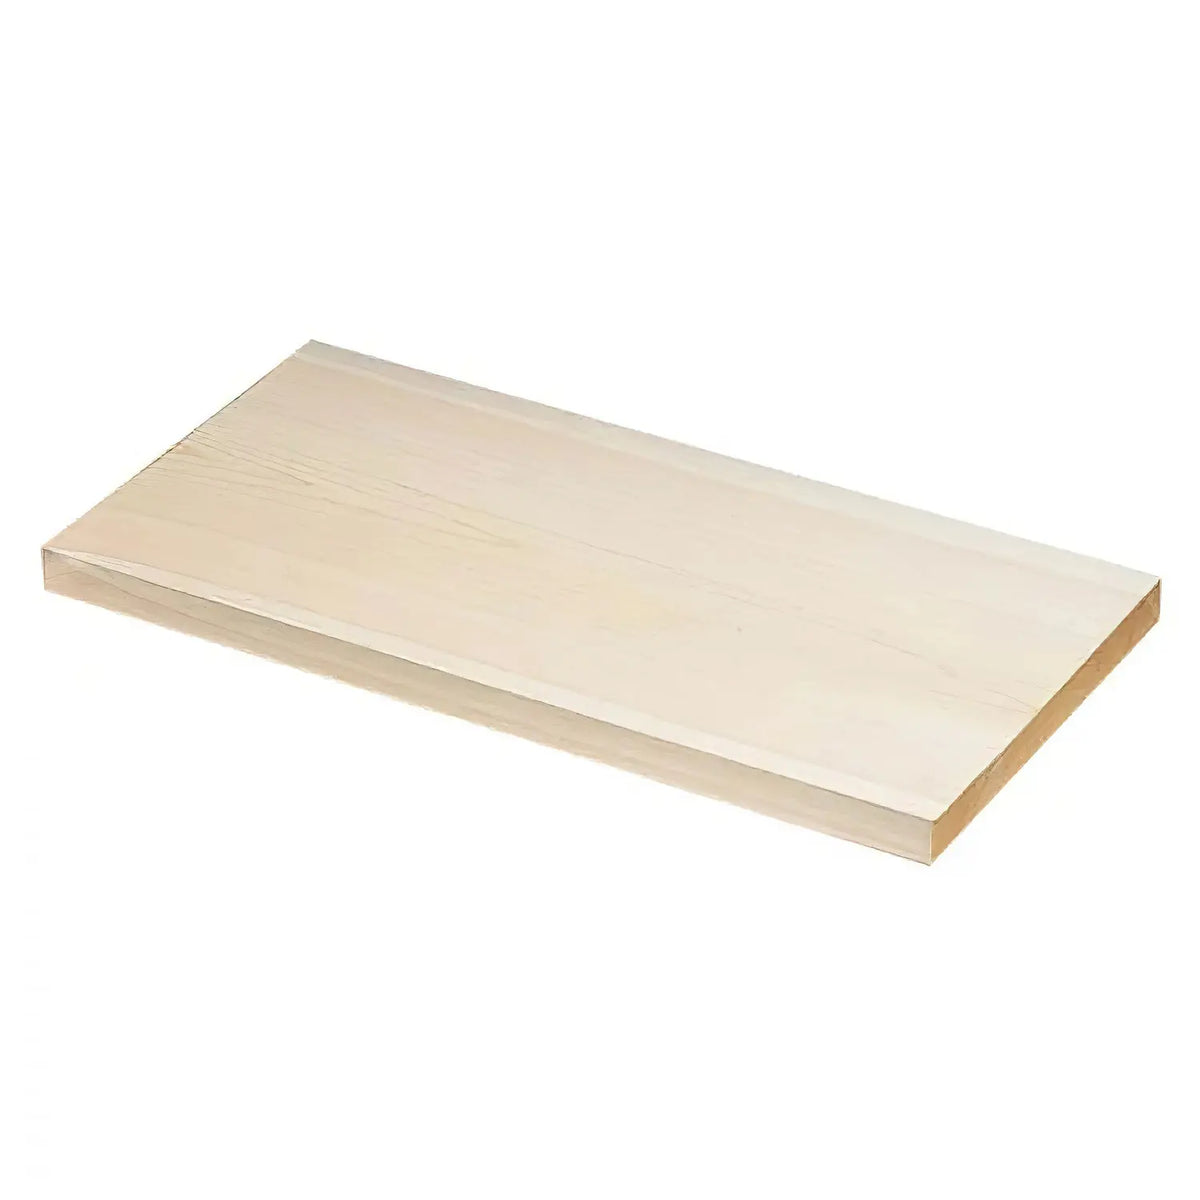 Kodai Hinoki Extra Large Cutting Board 35 x 12 x 1